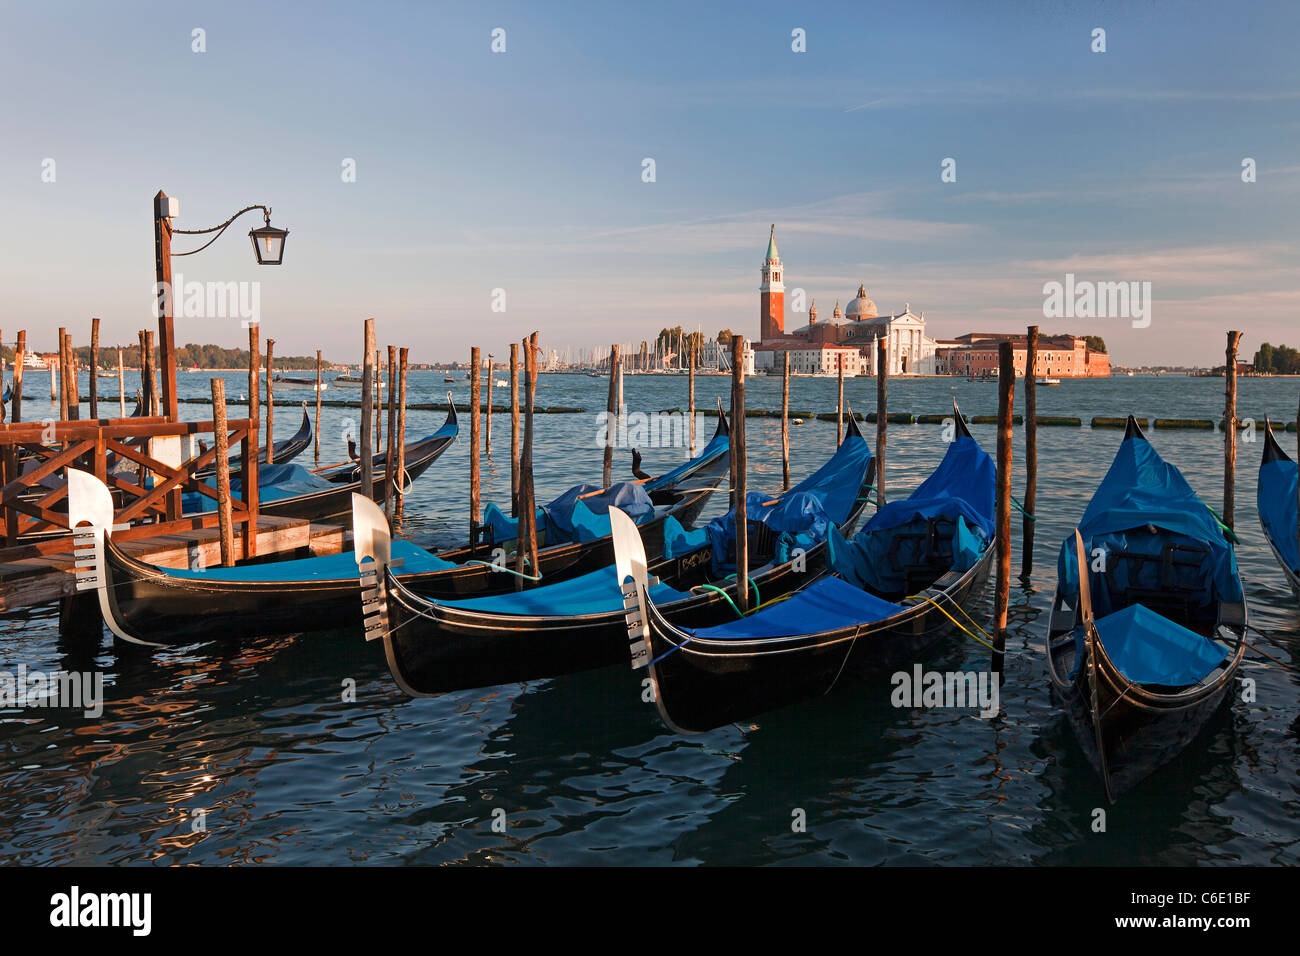 Quai de la Place St Marc avec les gondoles et la vue de l'île de San Giorgio Maggiore, à Venise, Italie, Europe Banque D'Images